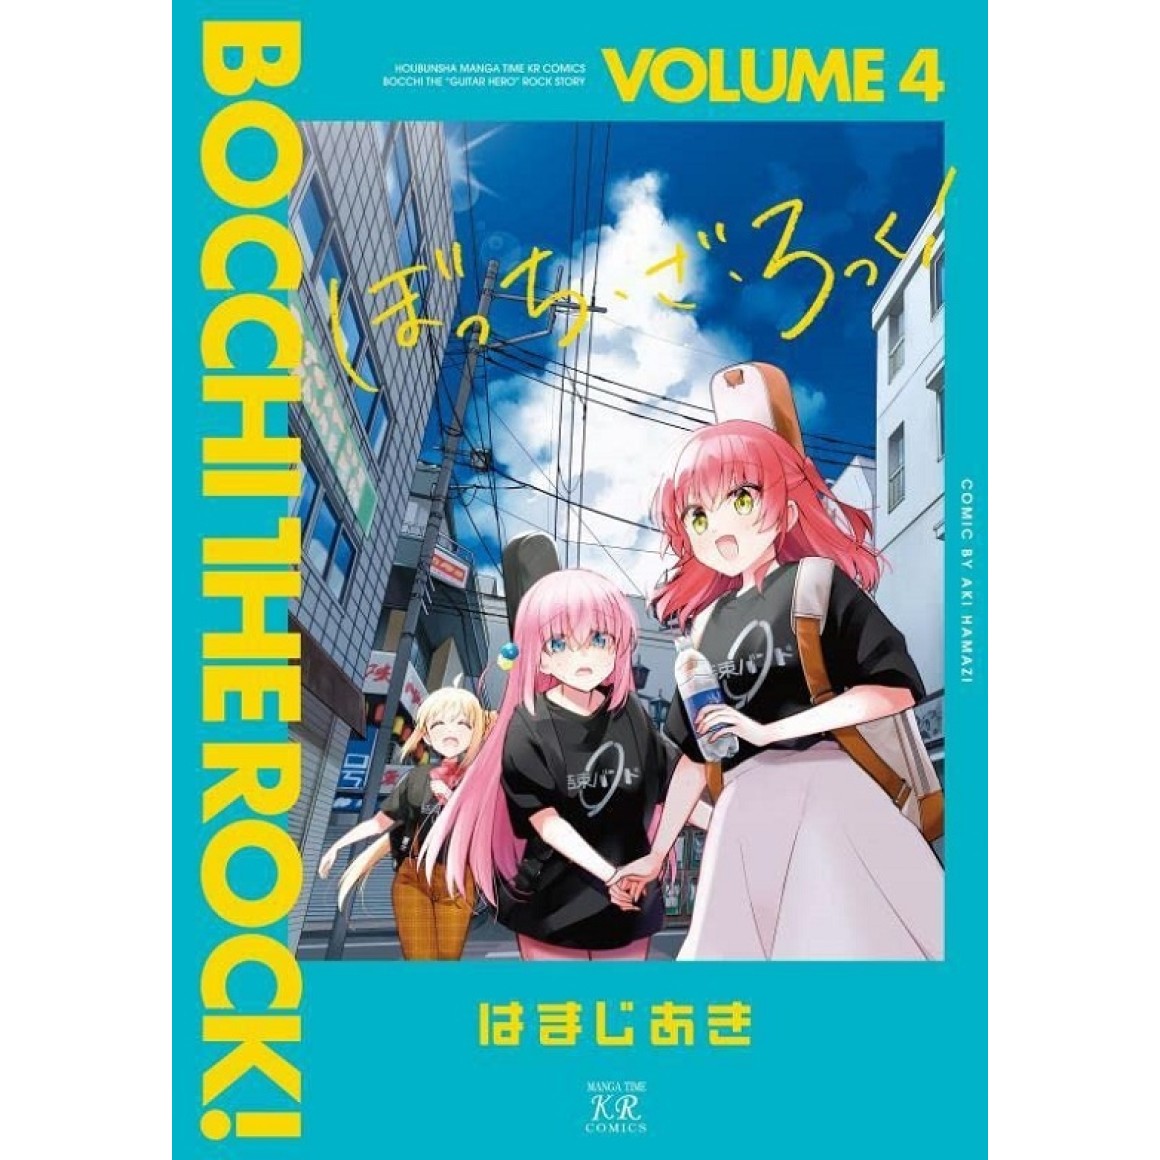 BOCCHI THE ROCK! vol. 3 - Edição Japonesa